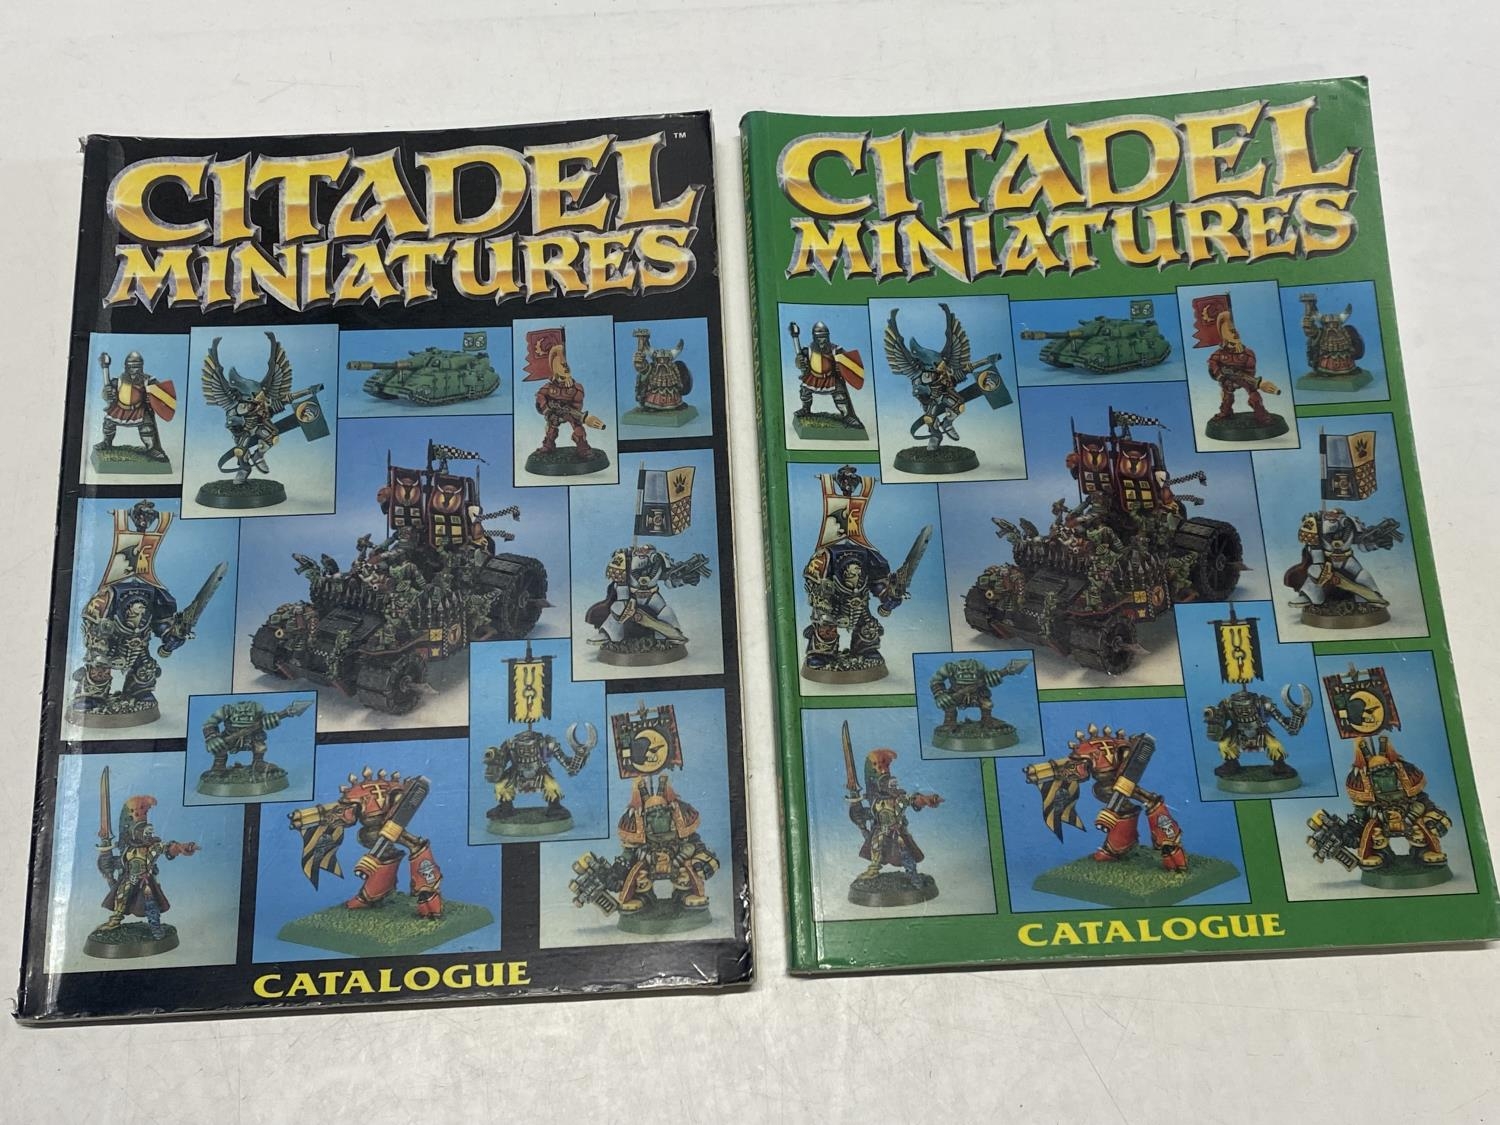 Two Citadel miniatures catalogues